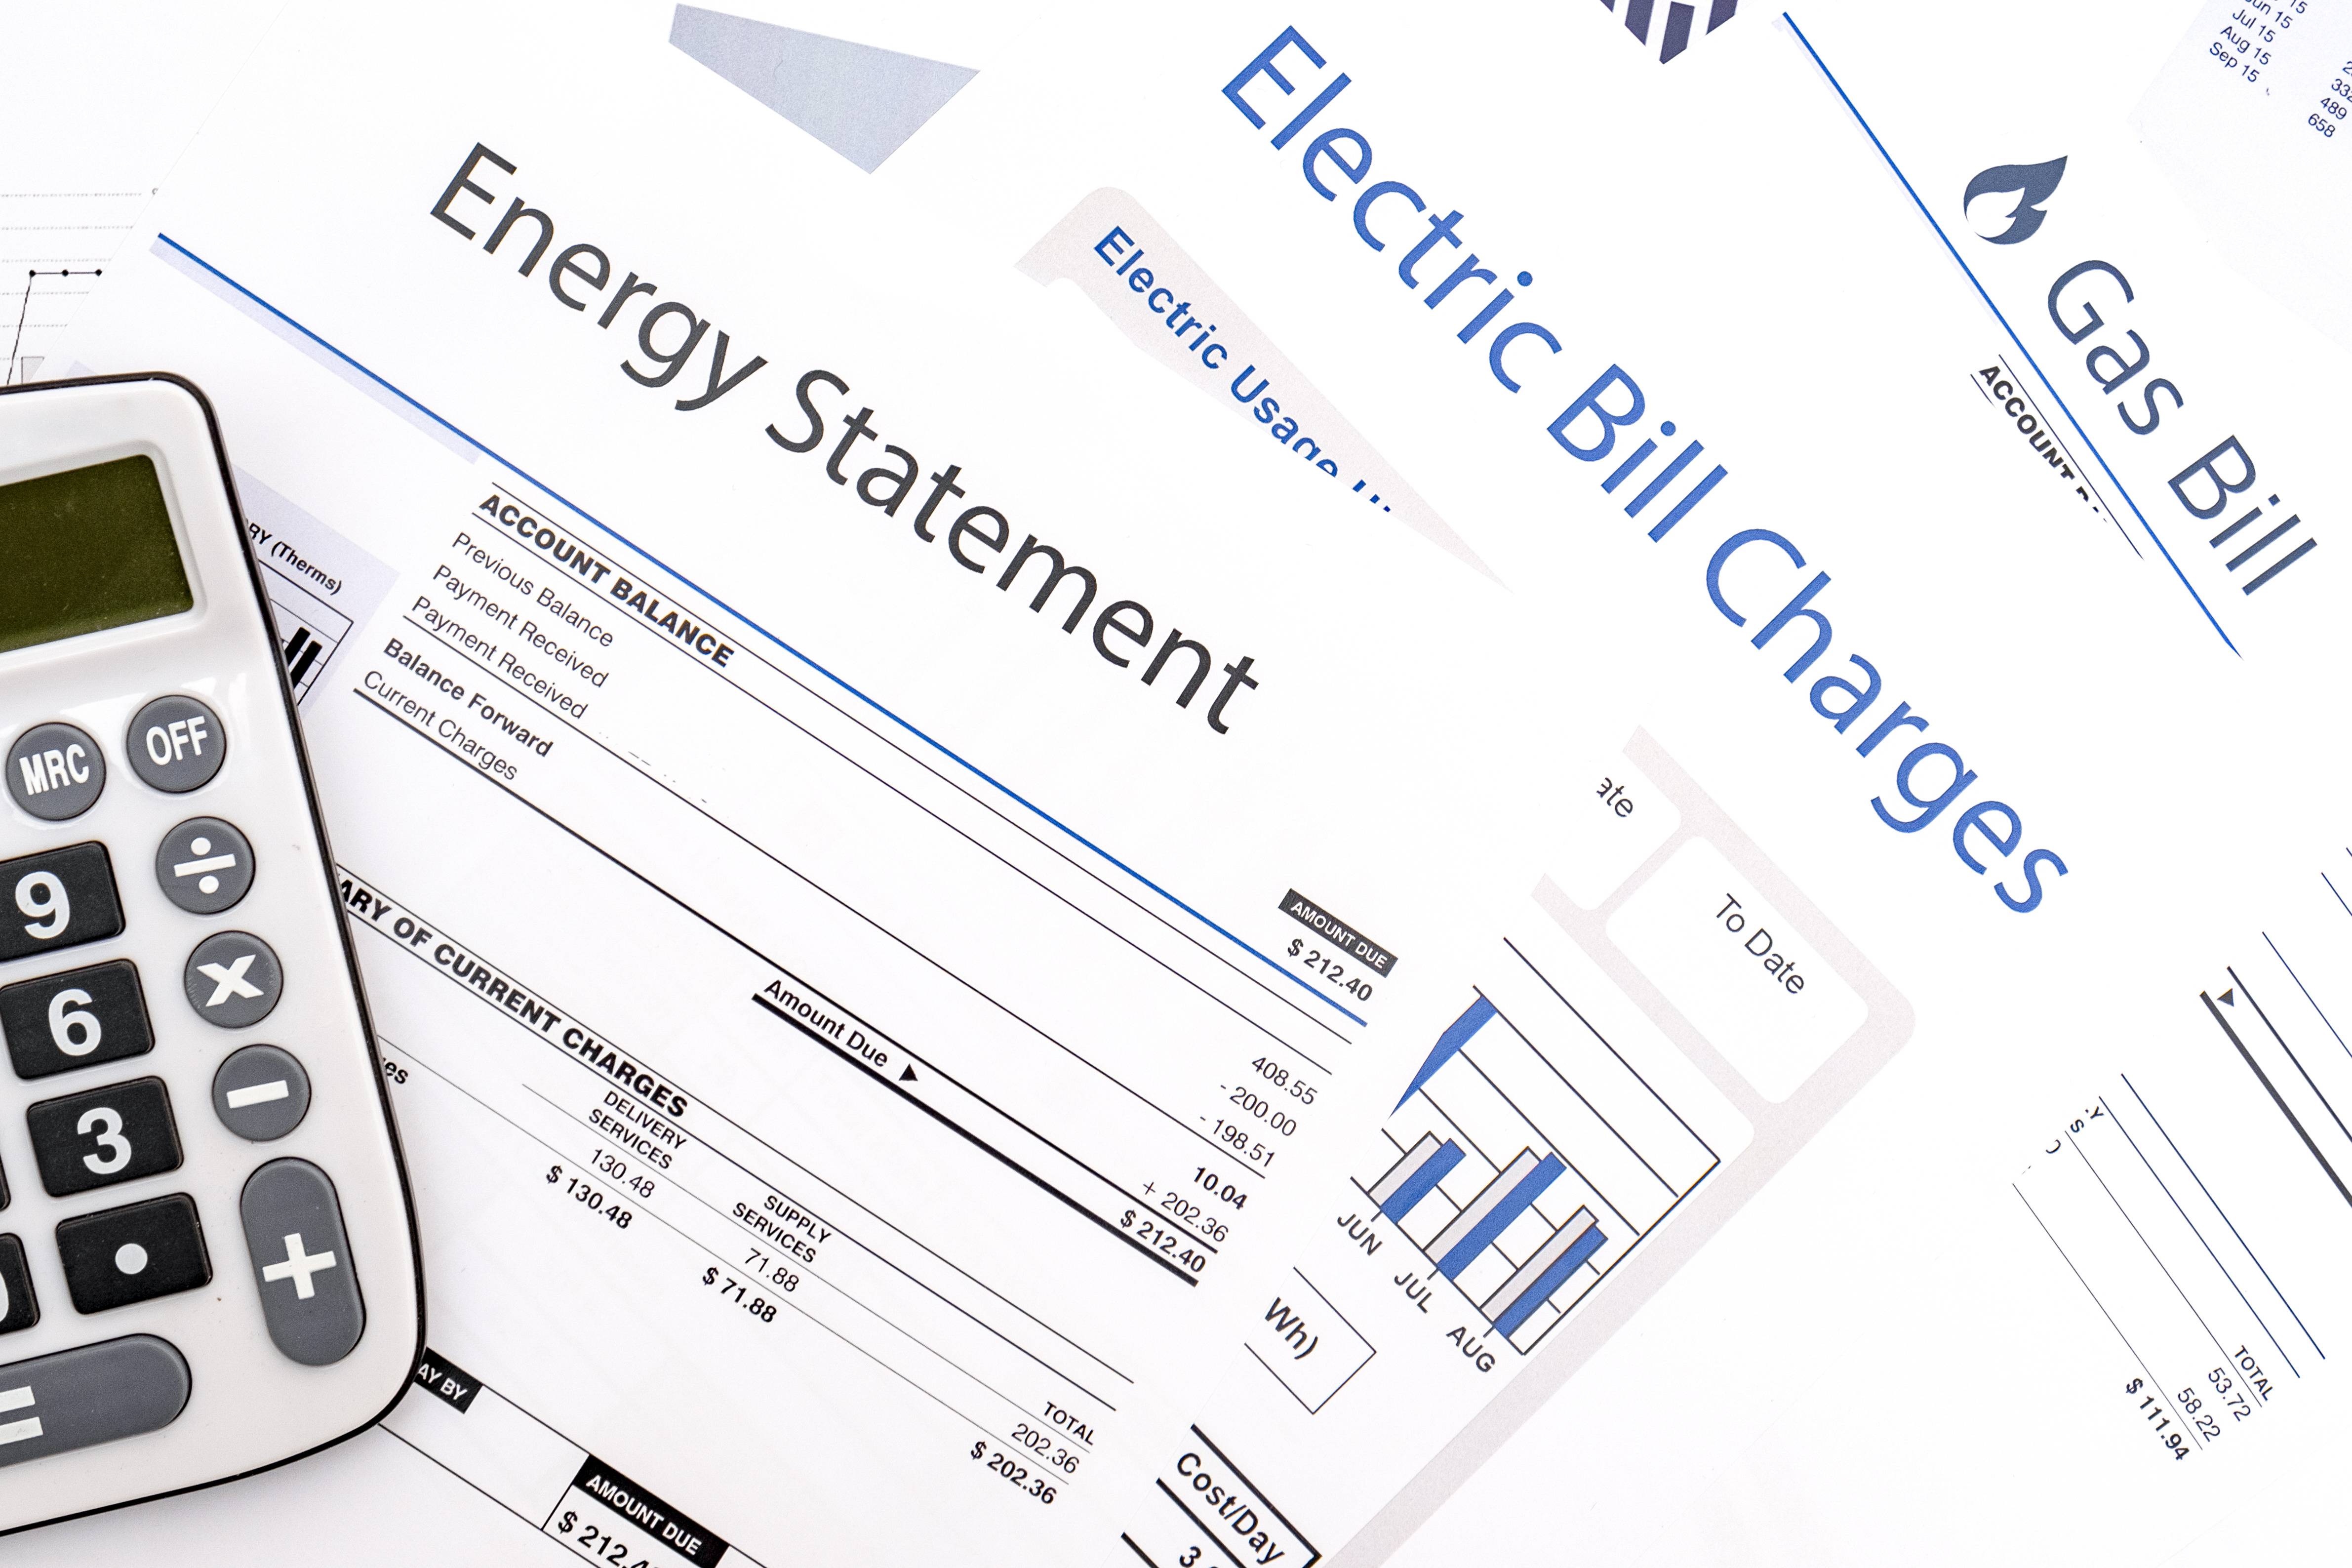 法国居民电价上涨15% 政府为贫困户发“能源补助券”